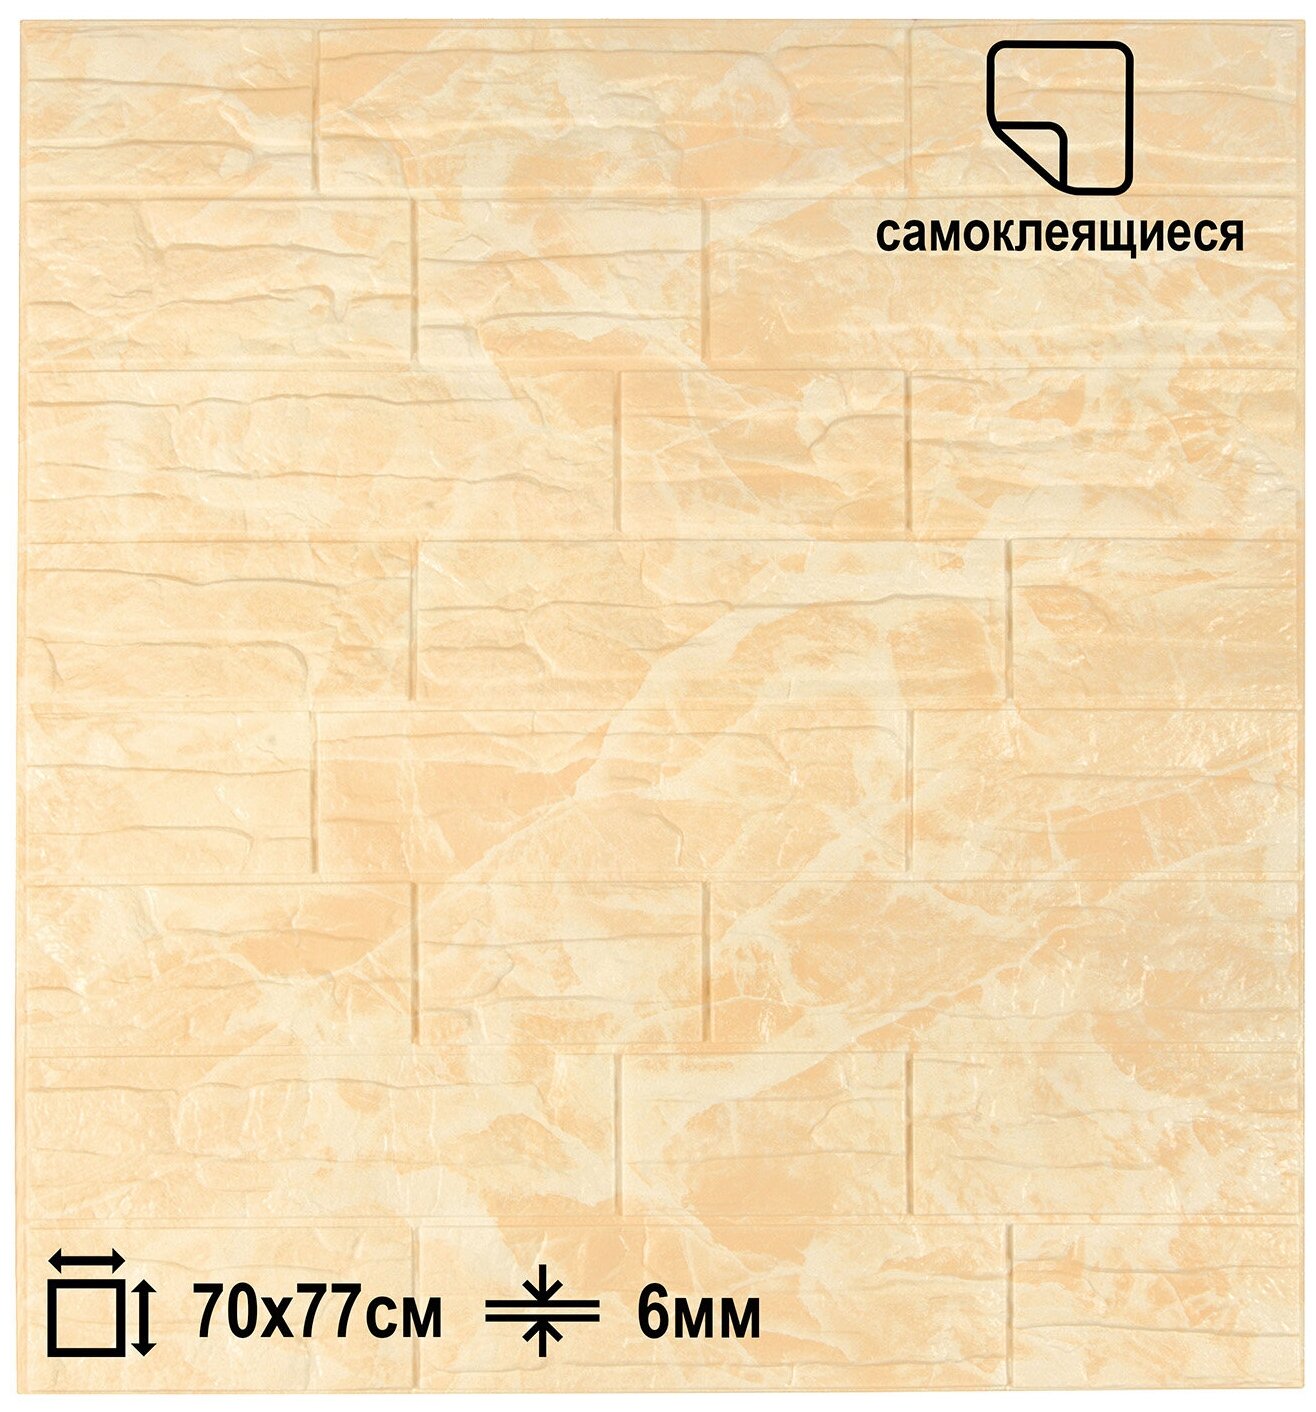 Самоклеящаяся 3D-панель для стен LAKO DECOR, цвет Бежево-белый, 70x77см, толщина 6мм